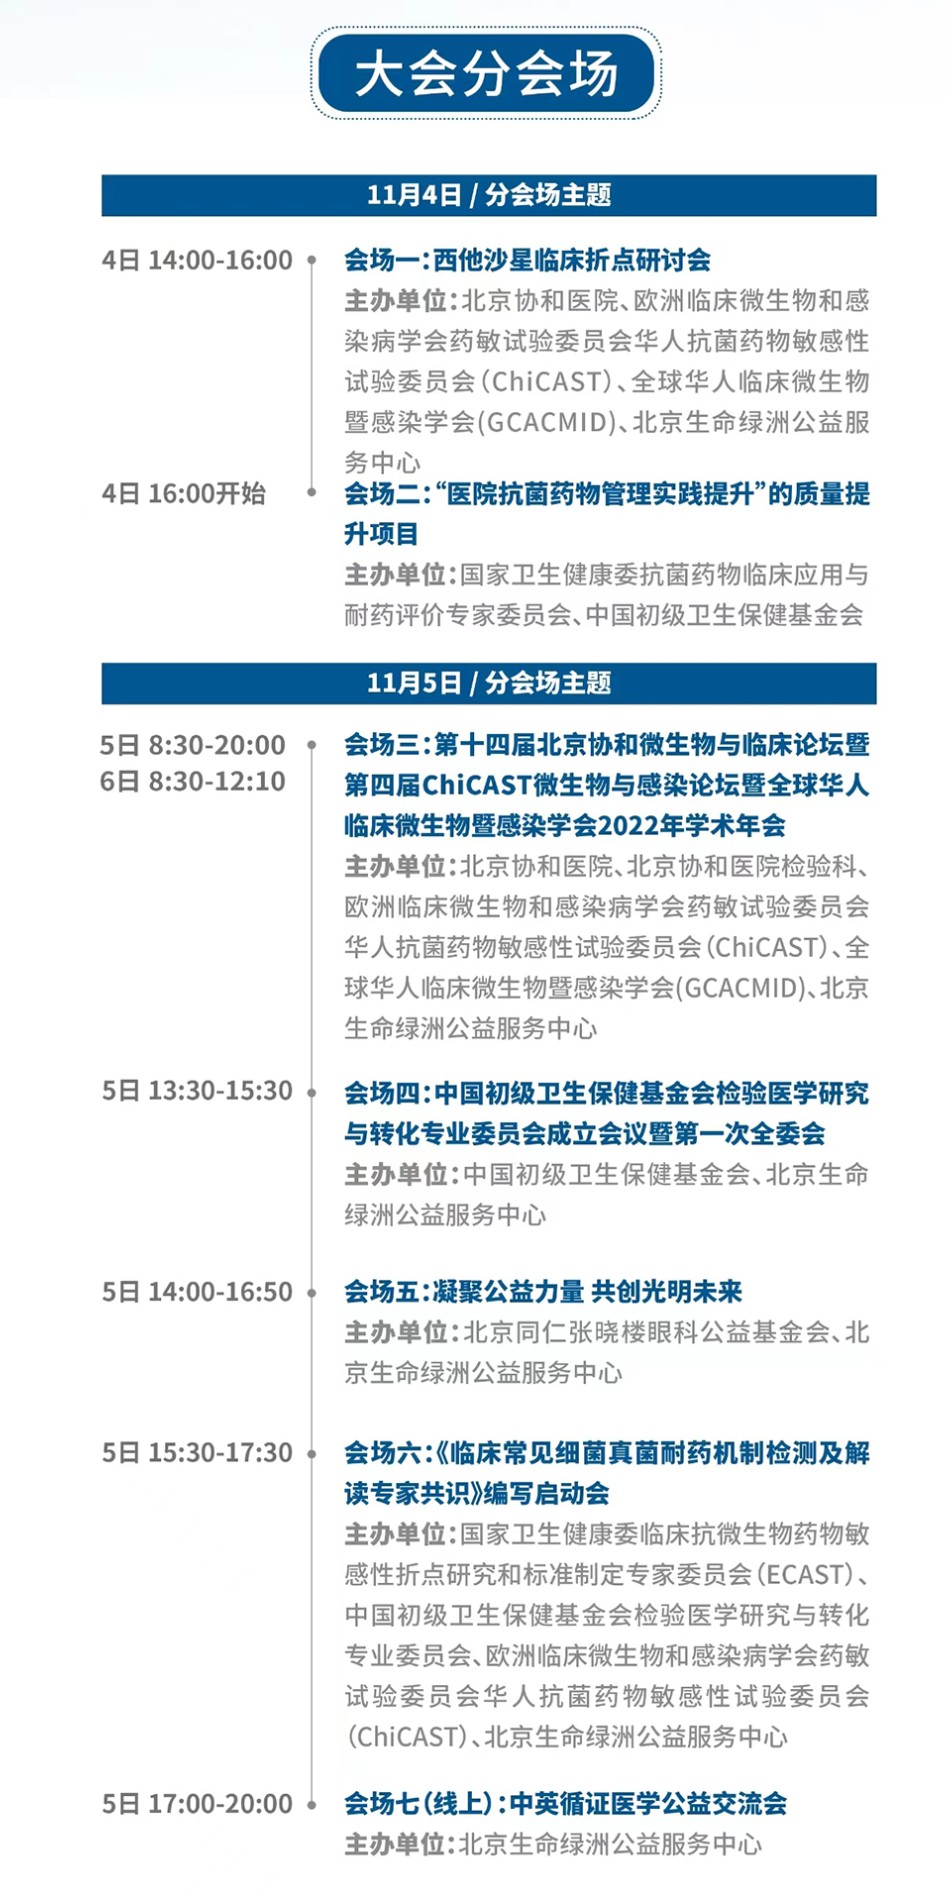 2022年第四届中国医师公益大会将于11月4-5日在京召开